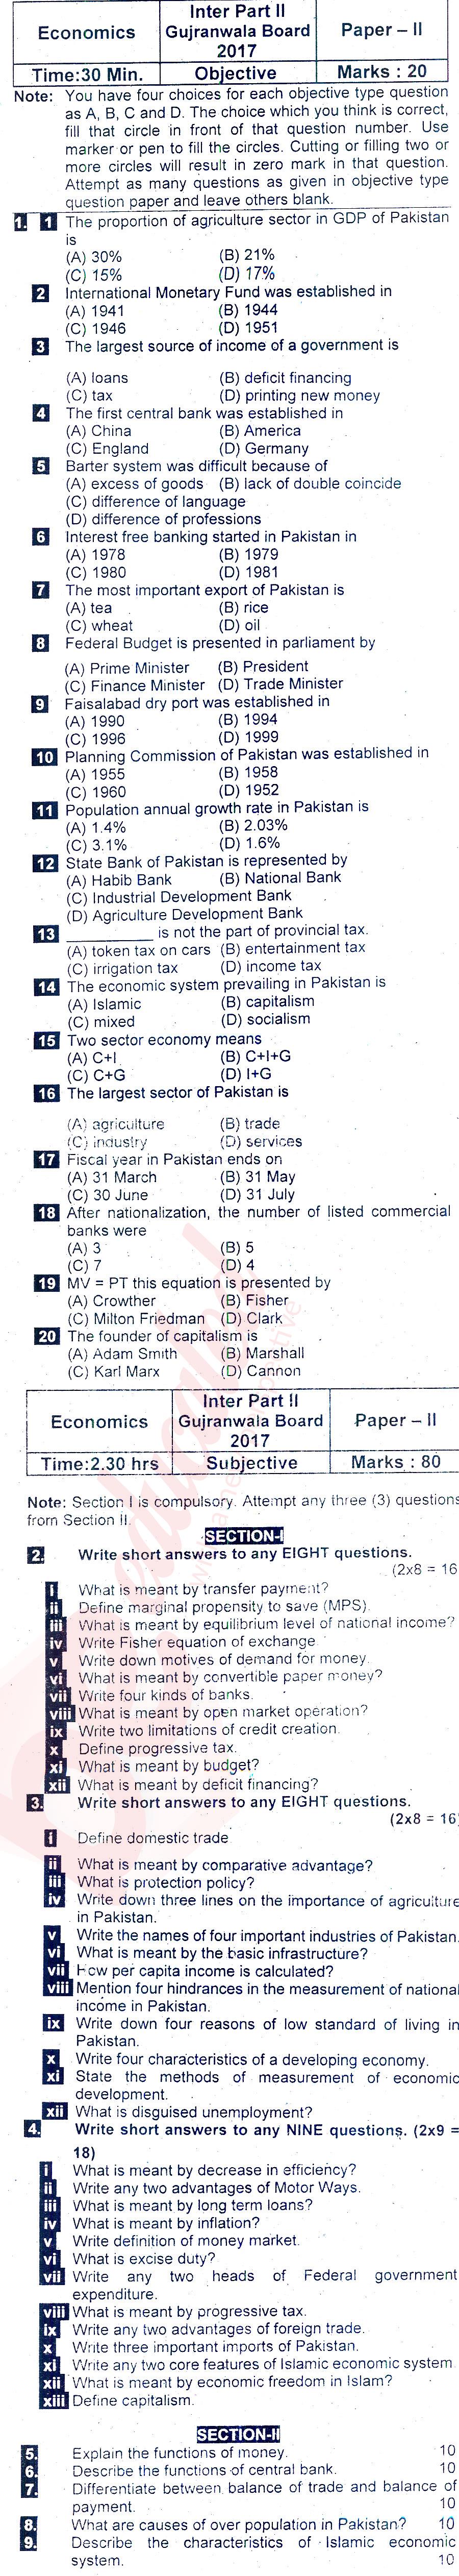 Economics FA Part 2 Past Paper Group 1 BISE Gujranwala 2017